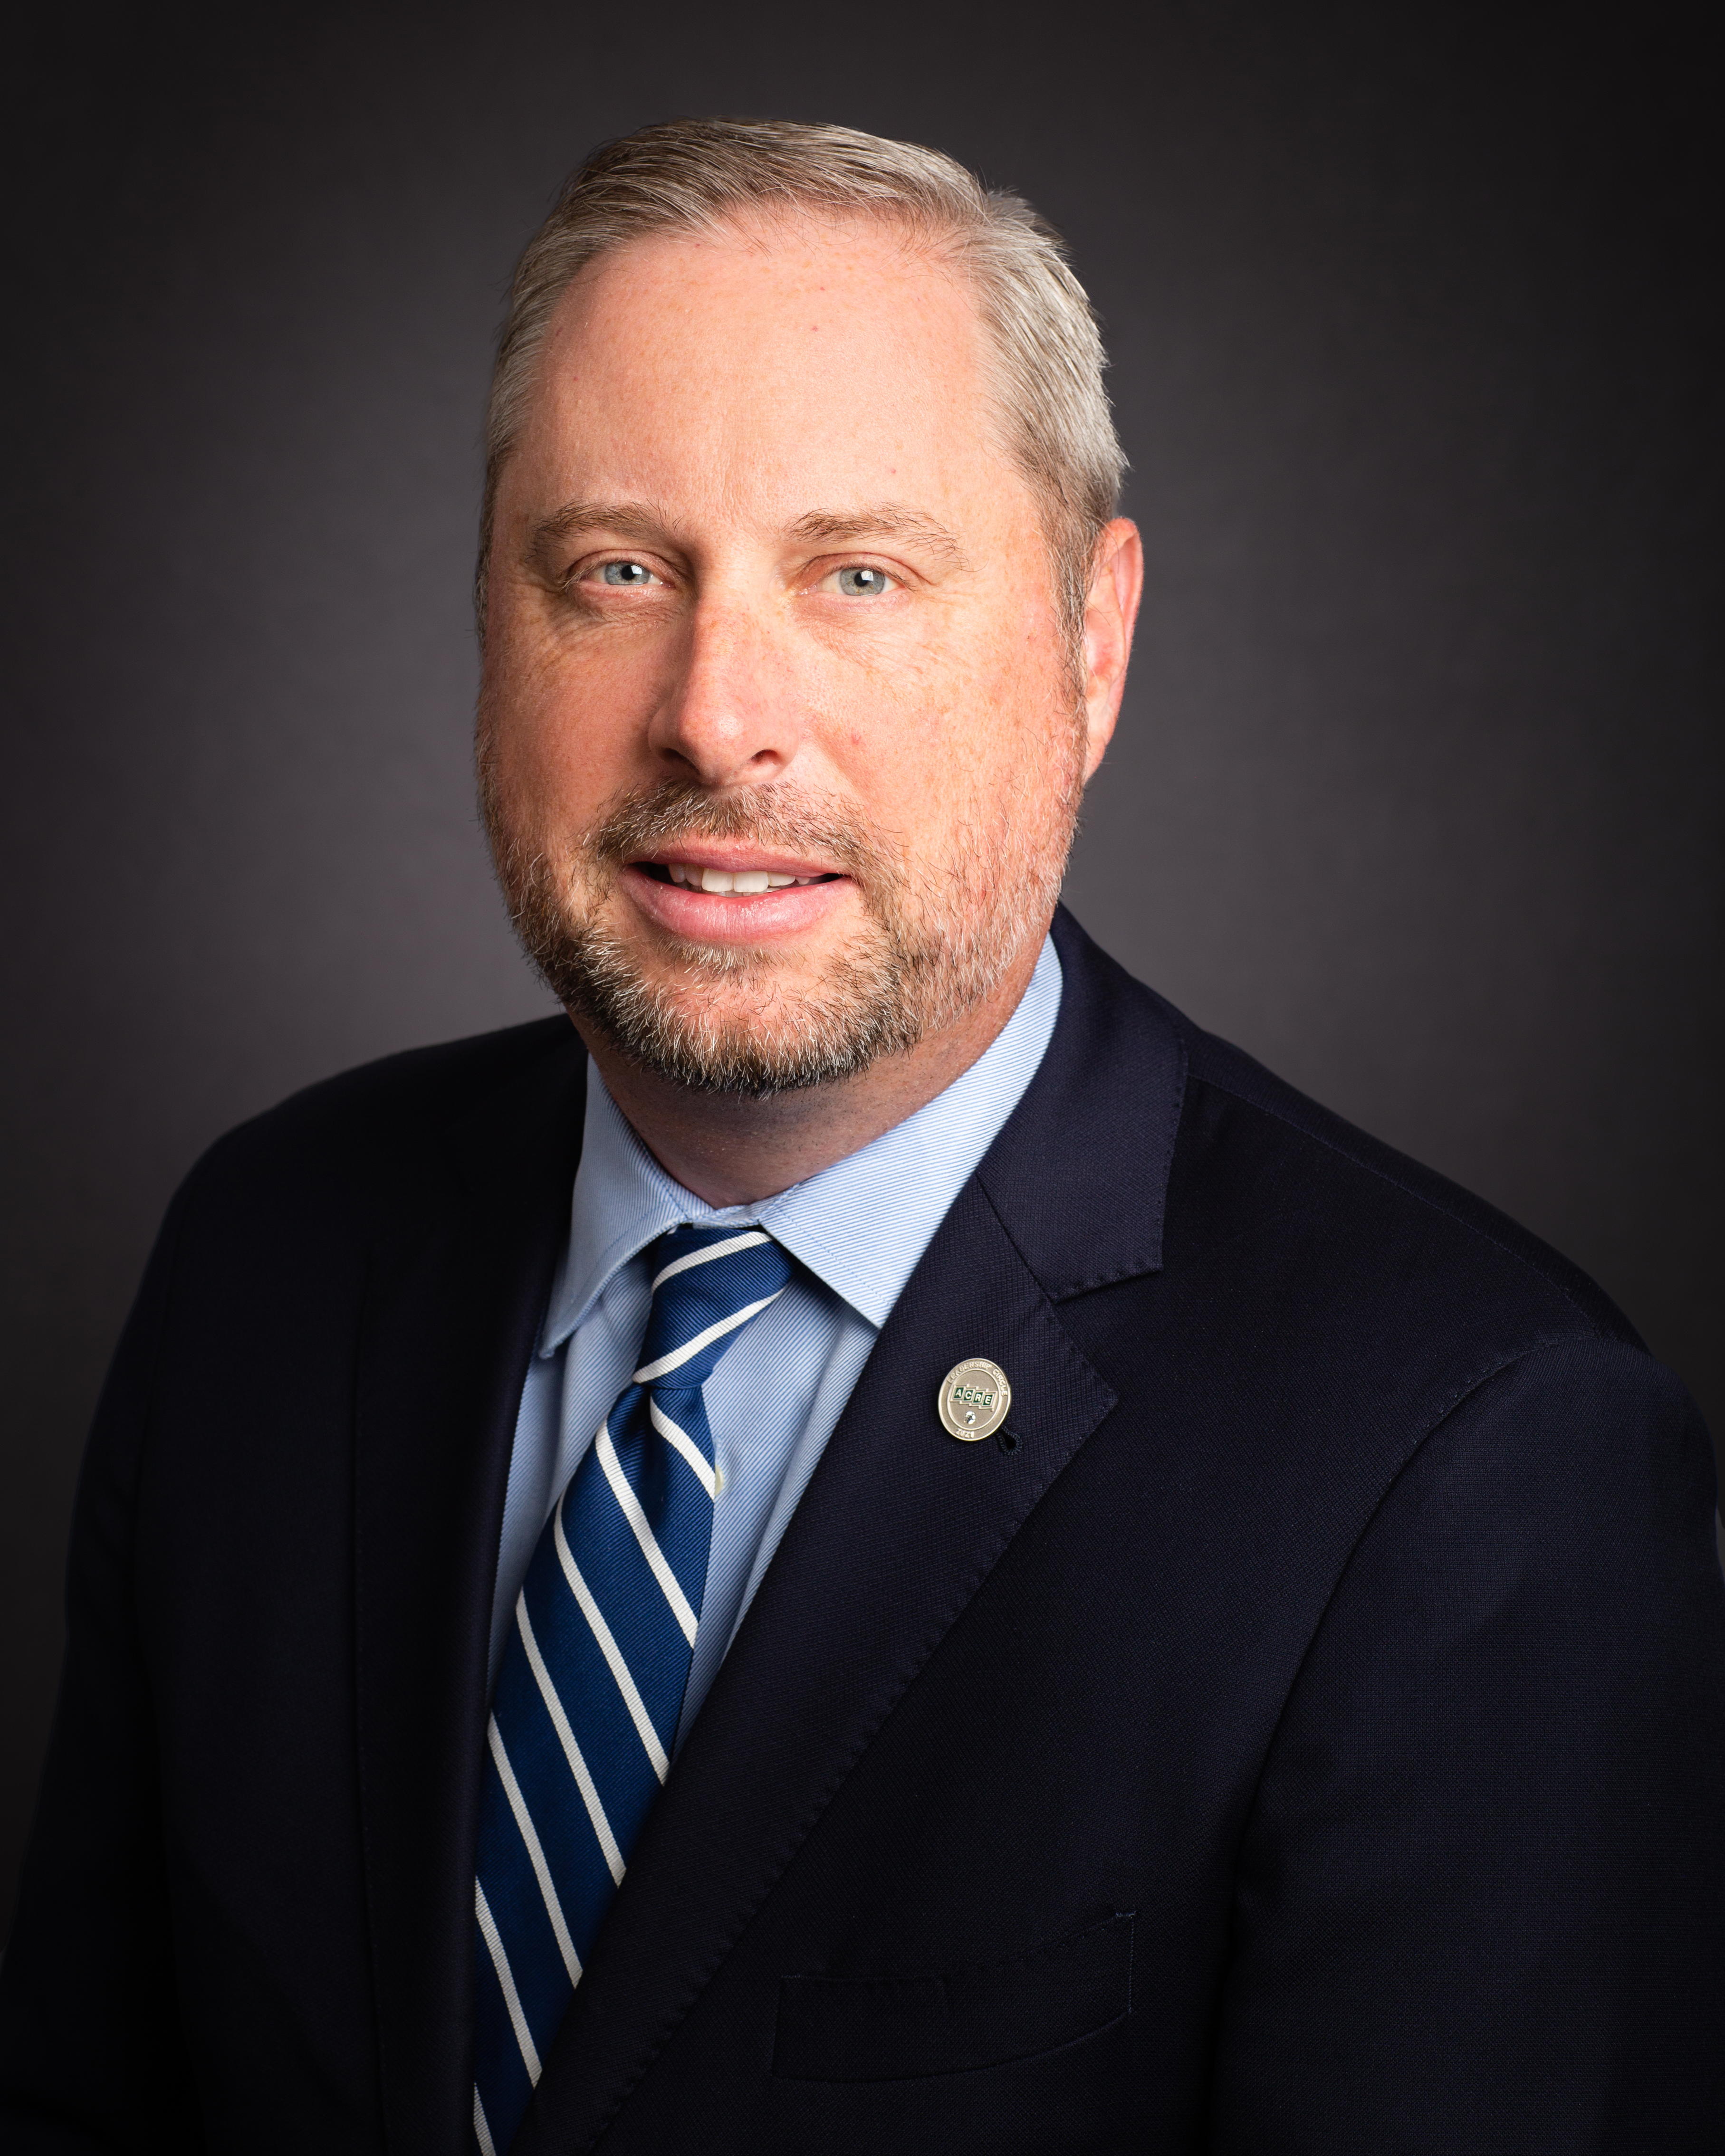 PREA/Allegheny President & CEO Steve M. Brame